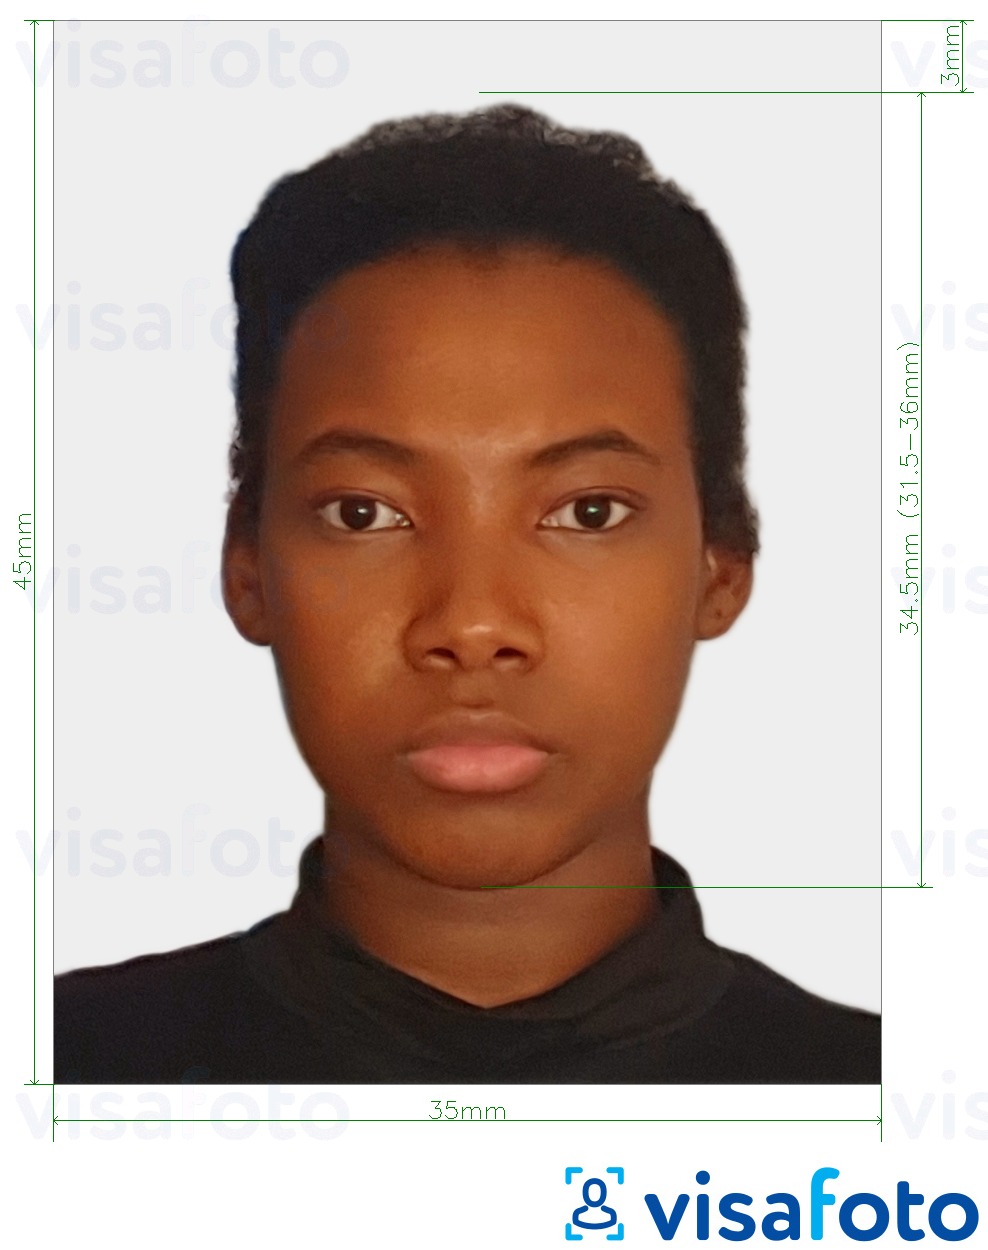 Exemplo de foto para Passaporte do Suriname 45x35 mm (1,77x1,37 pol.) com especificação exata de dimensão